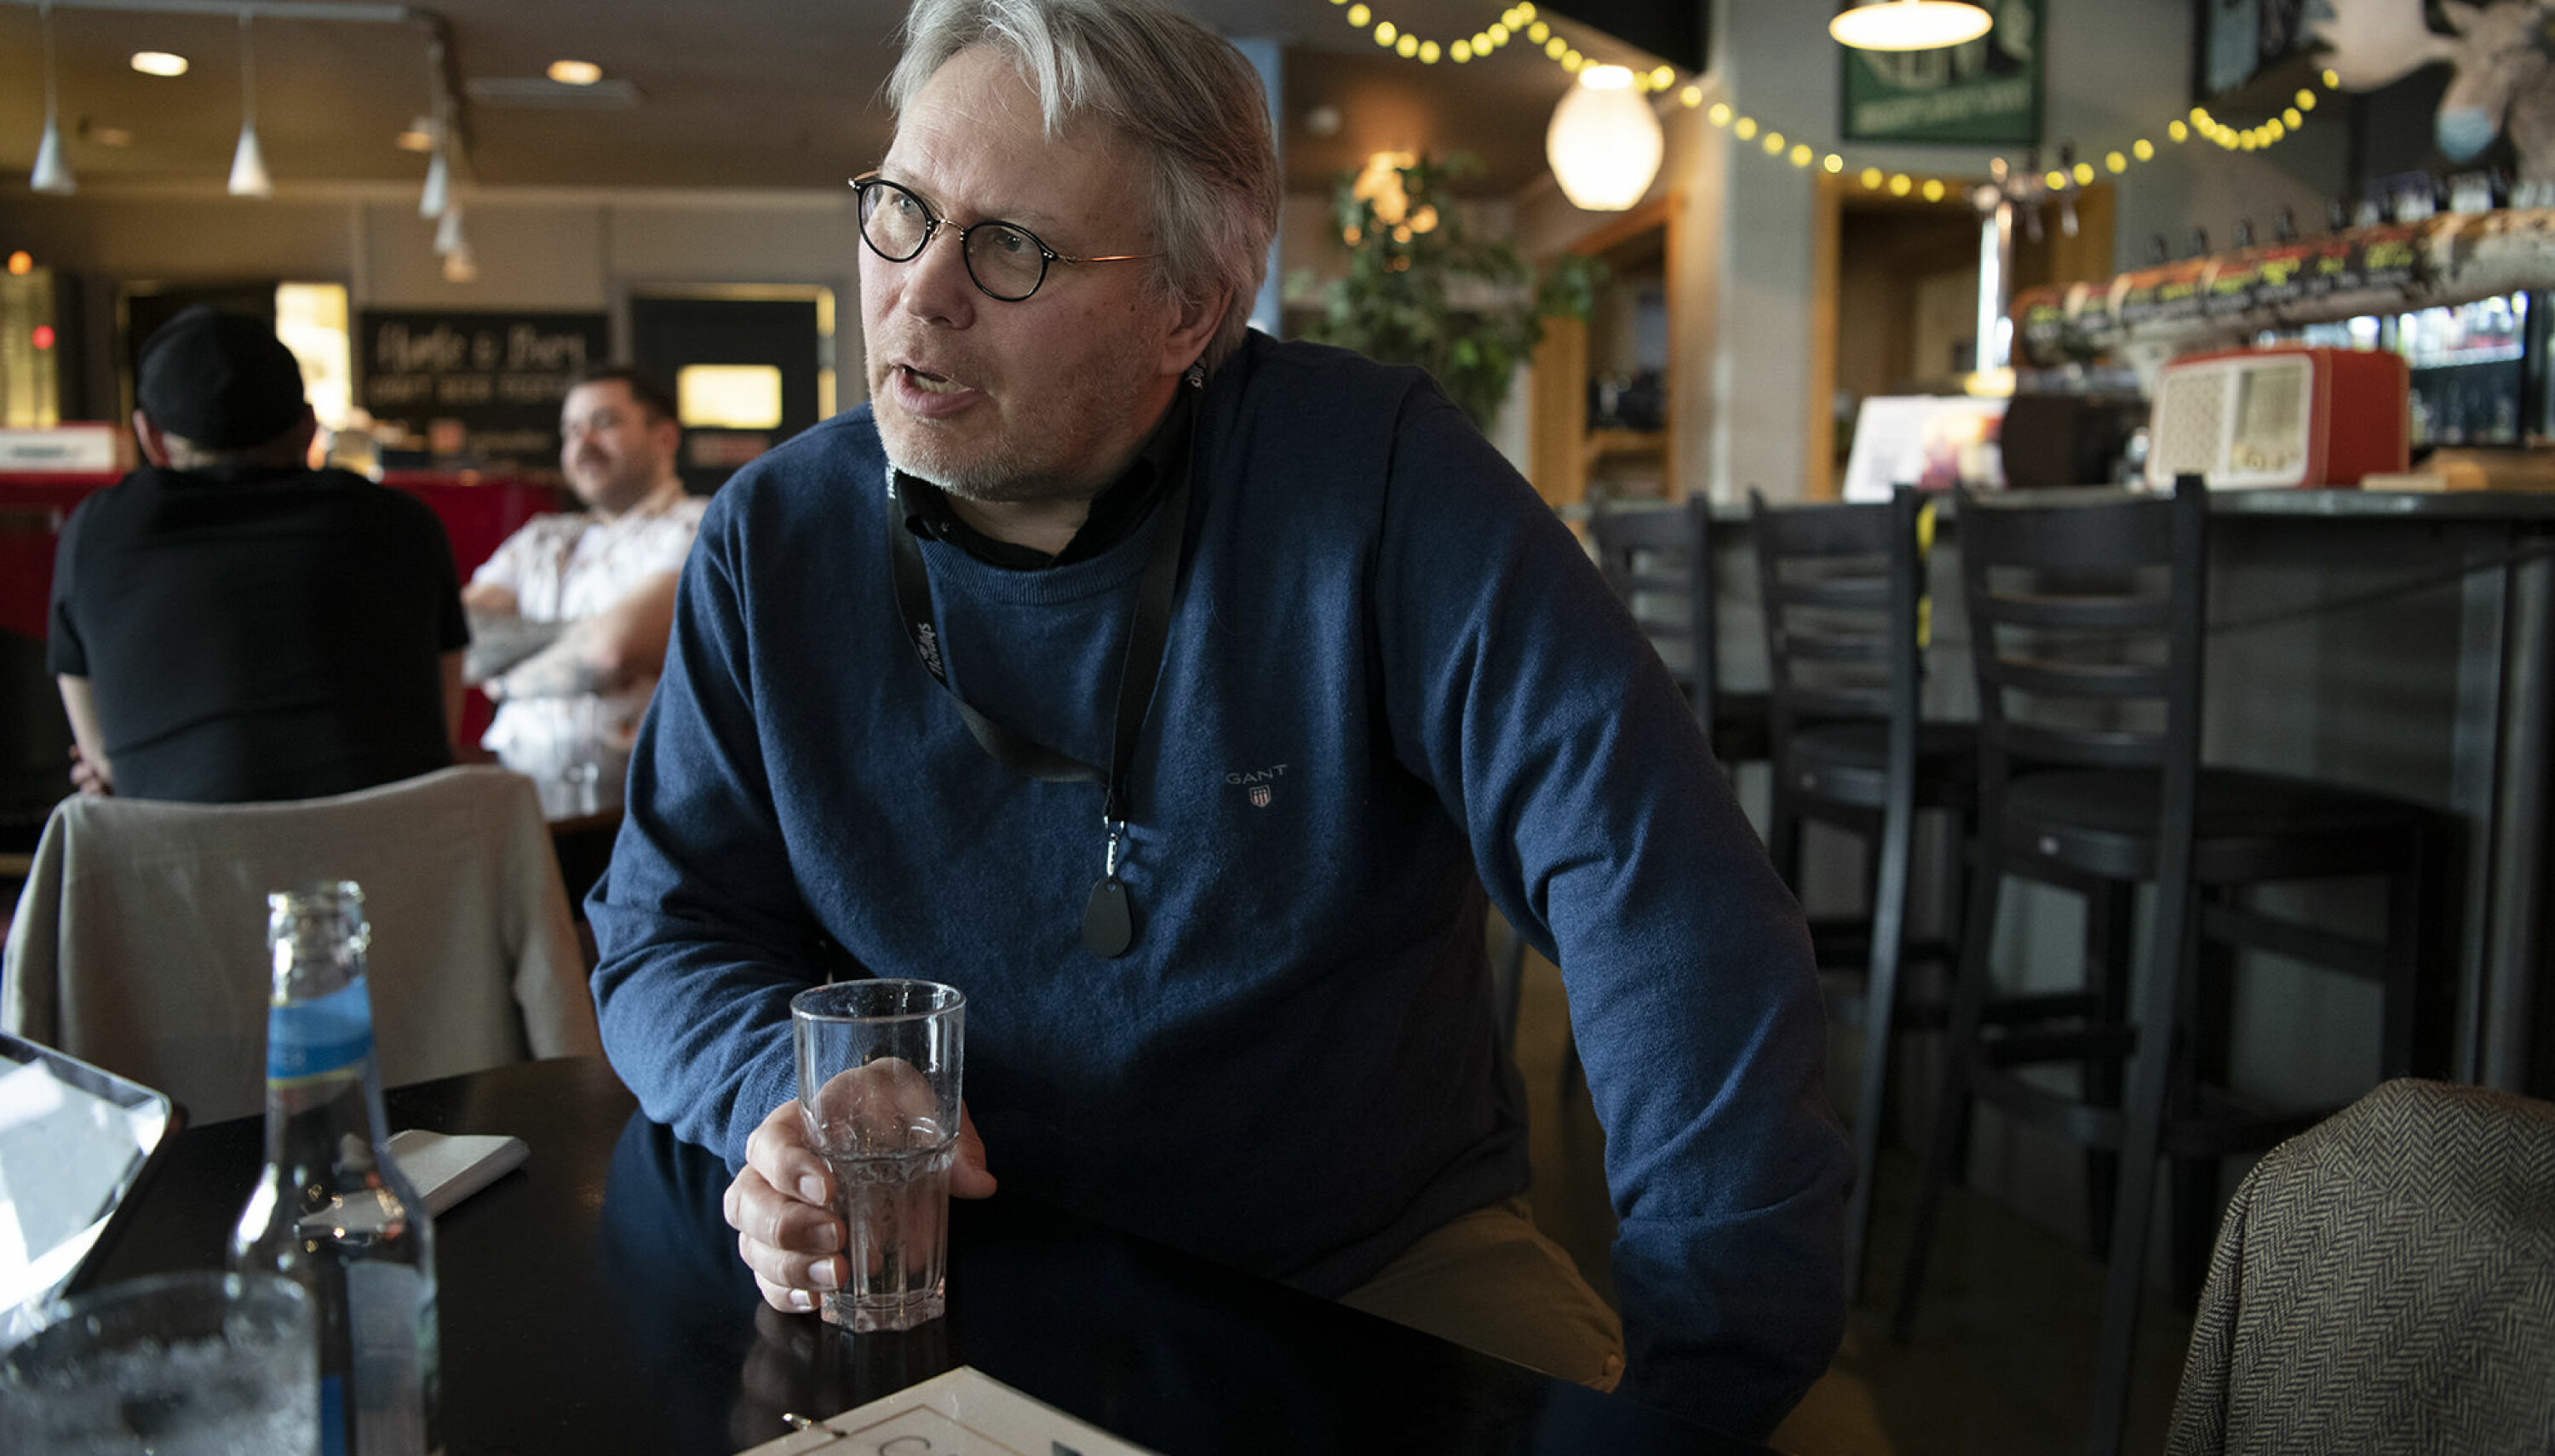 — Dag Rune Olsen kommer til å bli tatt veldig godt imot i Tromsø. Så får han heller bli holdt i ørene når det gjelder regnskap, økonomi og denslags, humrer Skjalg Fjellheim, politisk redaktør i avisen Nordlys.